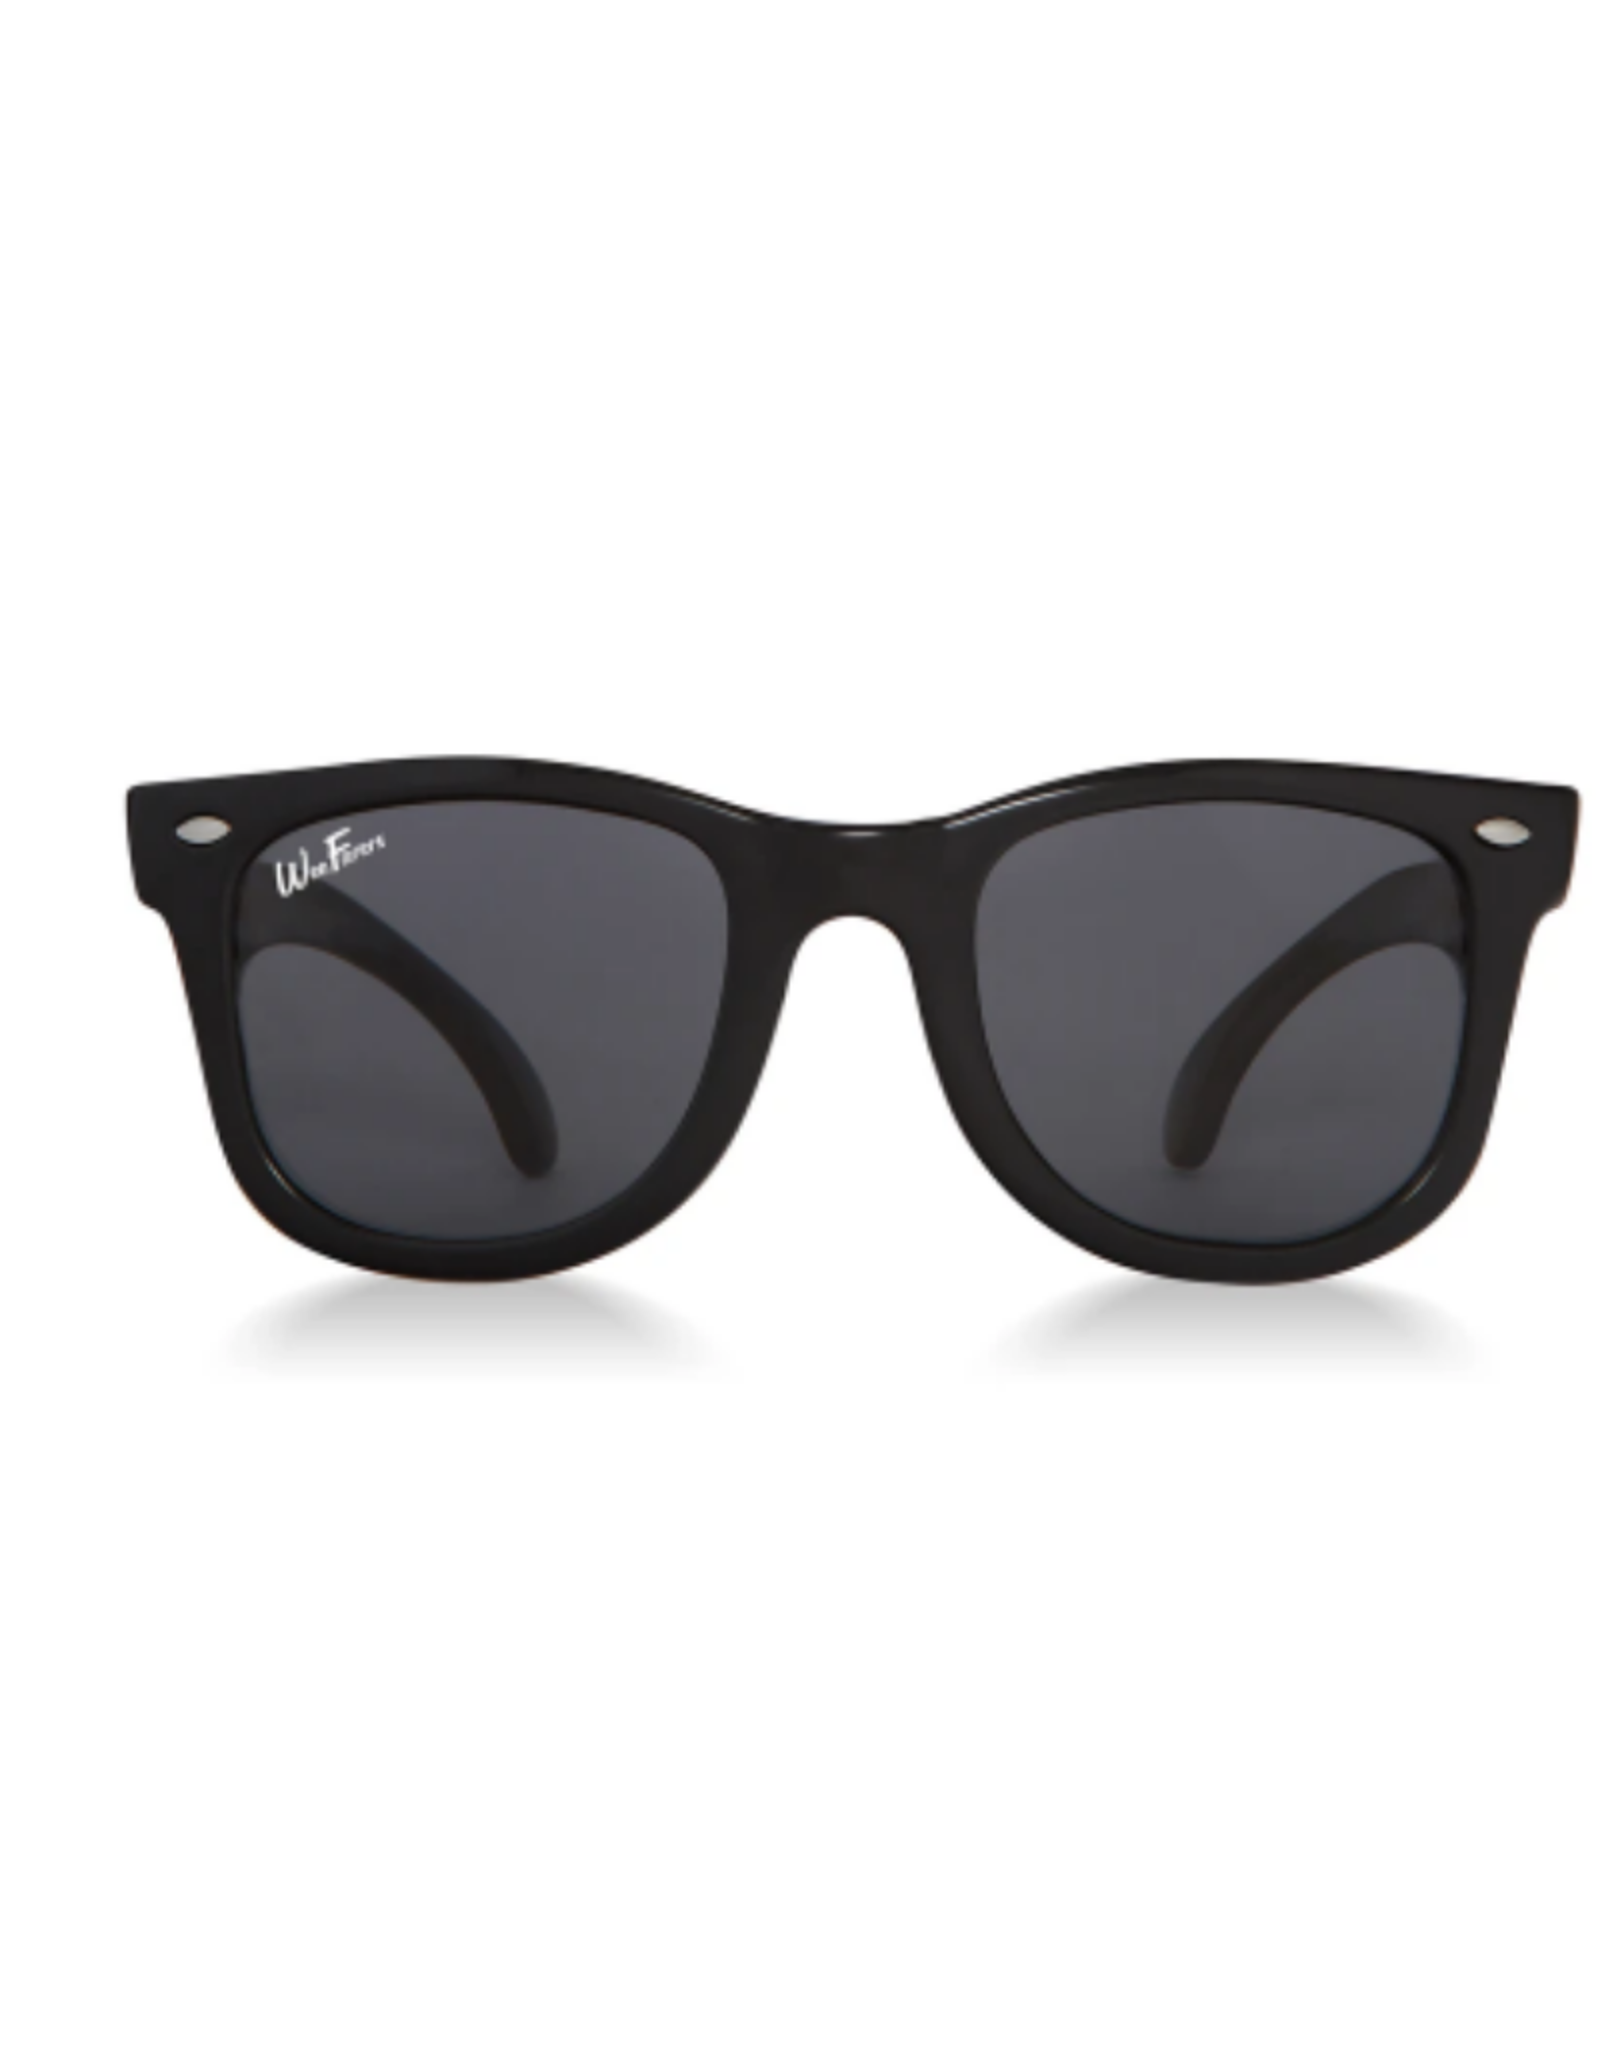 WeeFarers Black Sunglasses